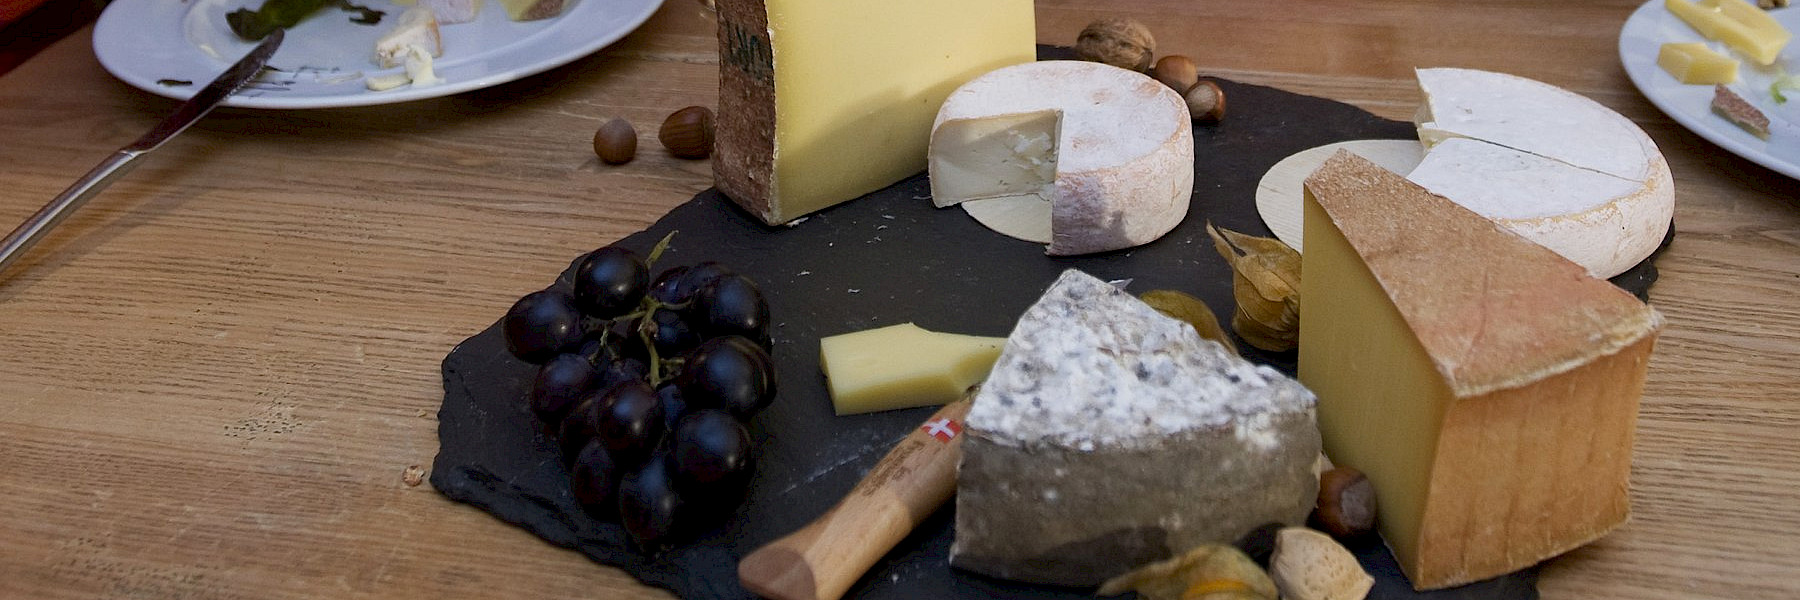 Plateau de fromage avec la Tomme de Savoie